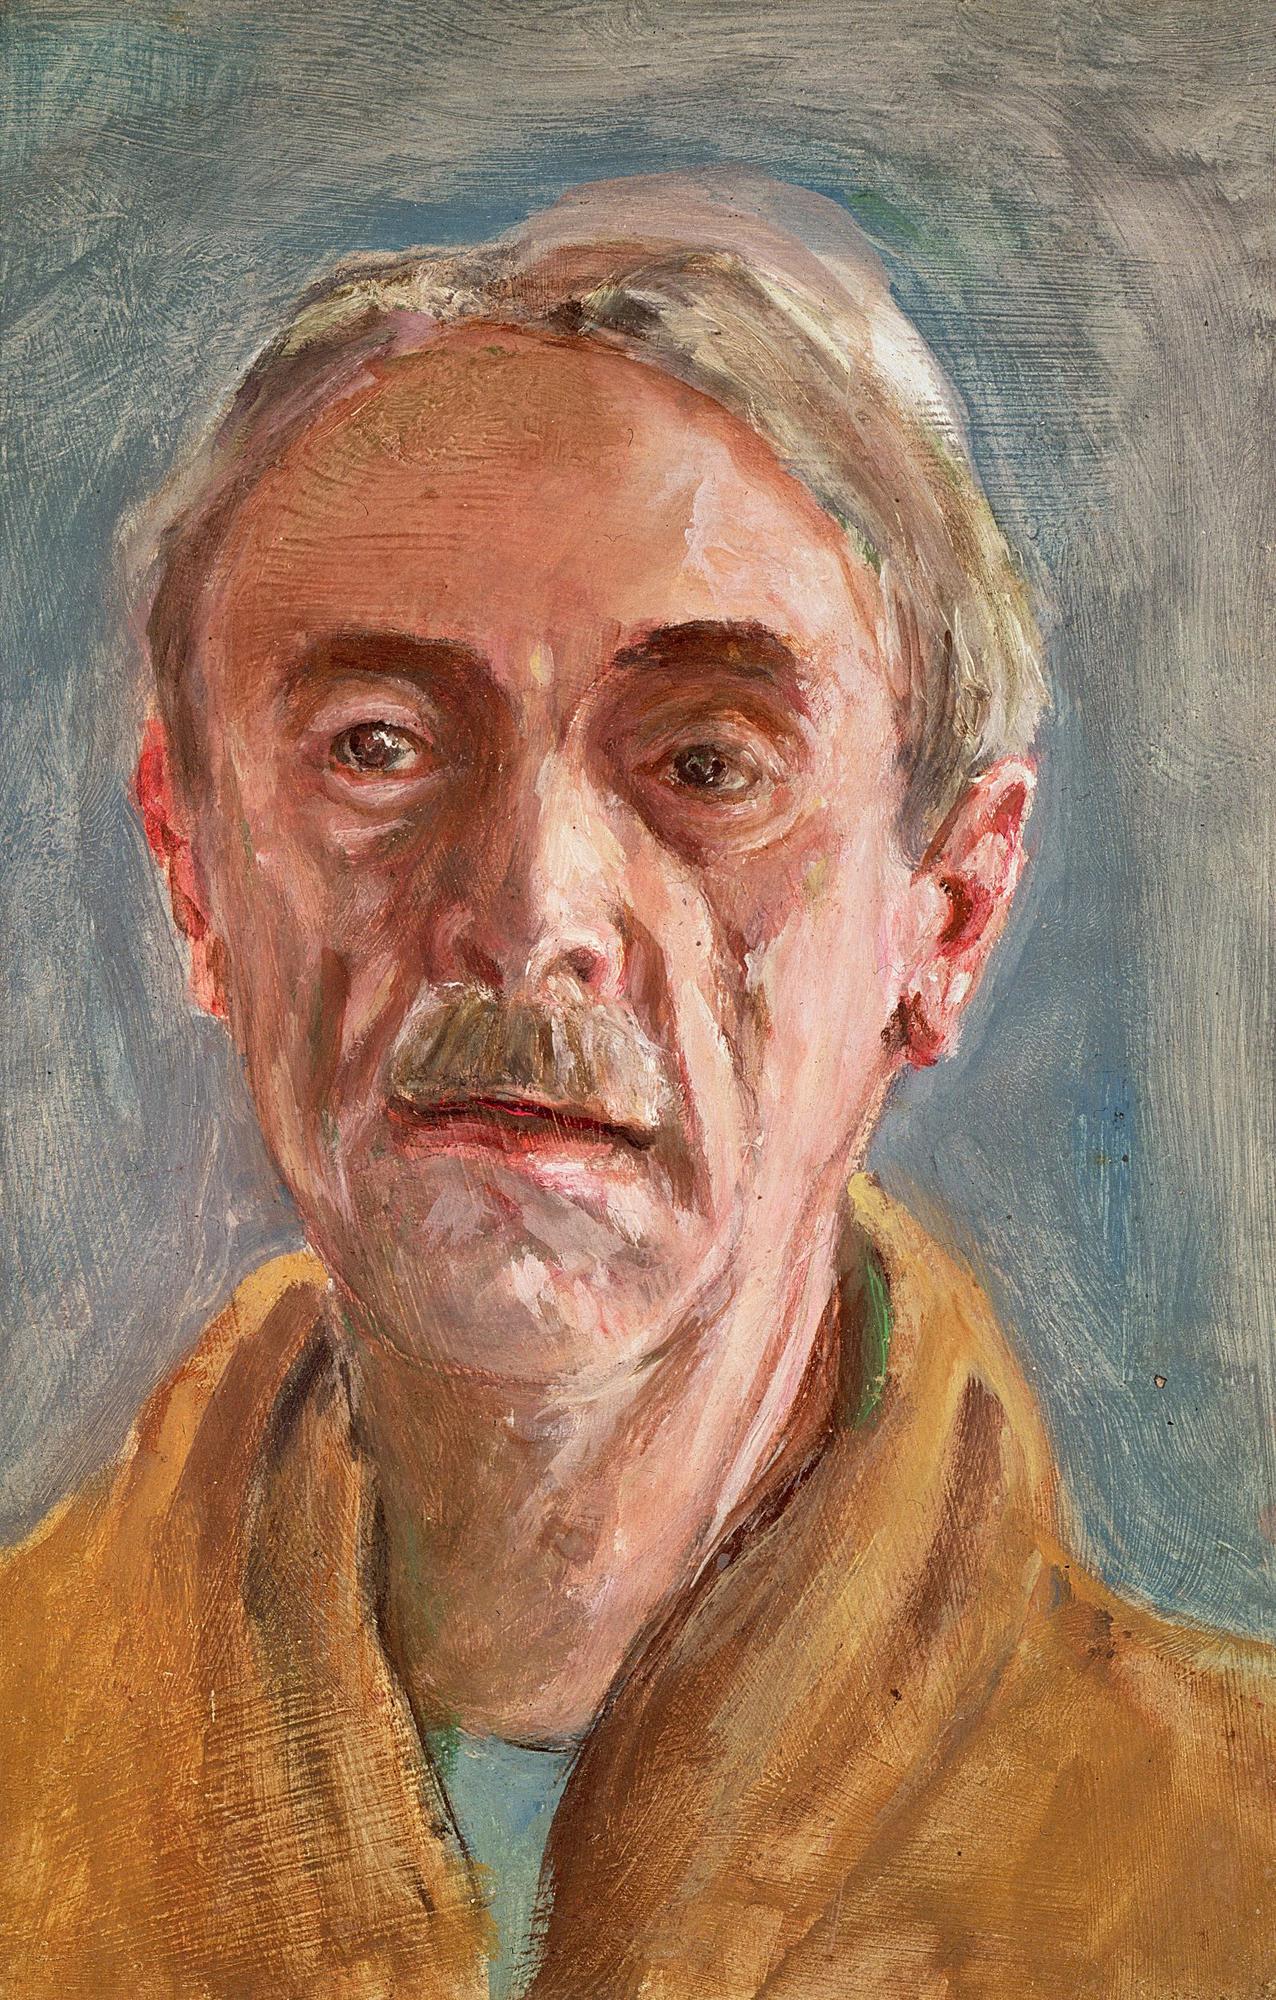 Autoportrait de Paul Valéry (1871-1945), l'écrivain préféré de Rilke. [Leemage via AFP]